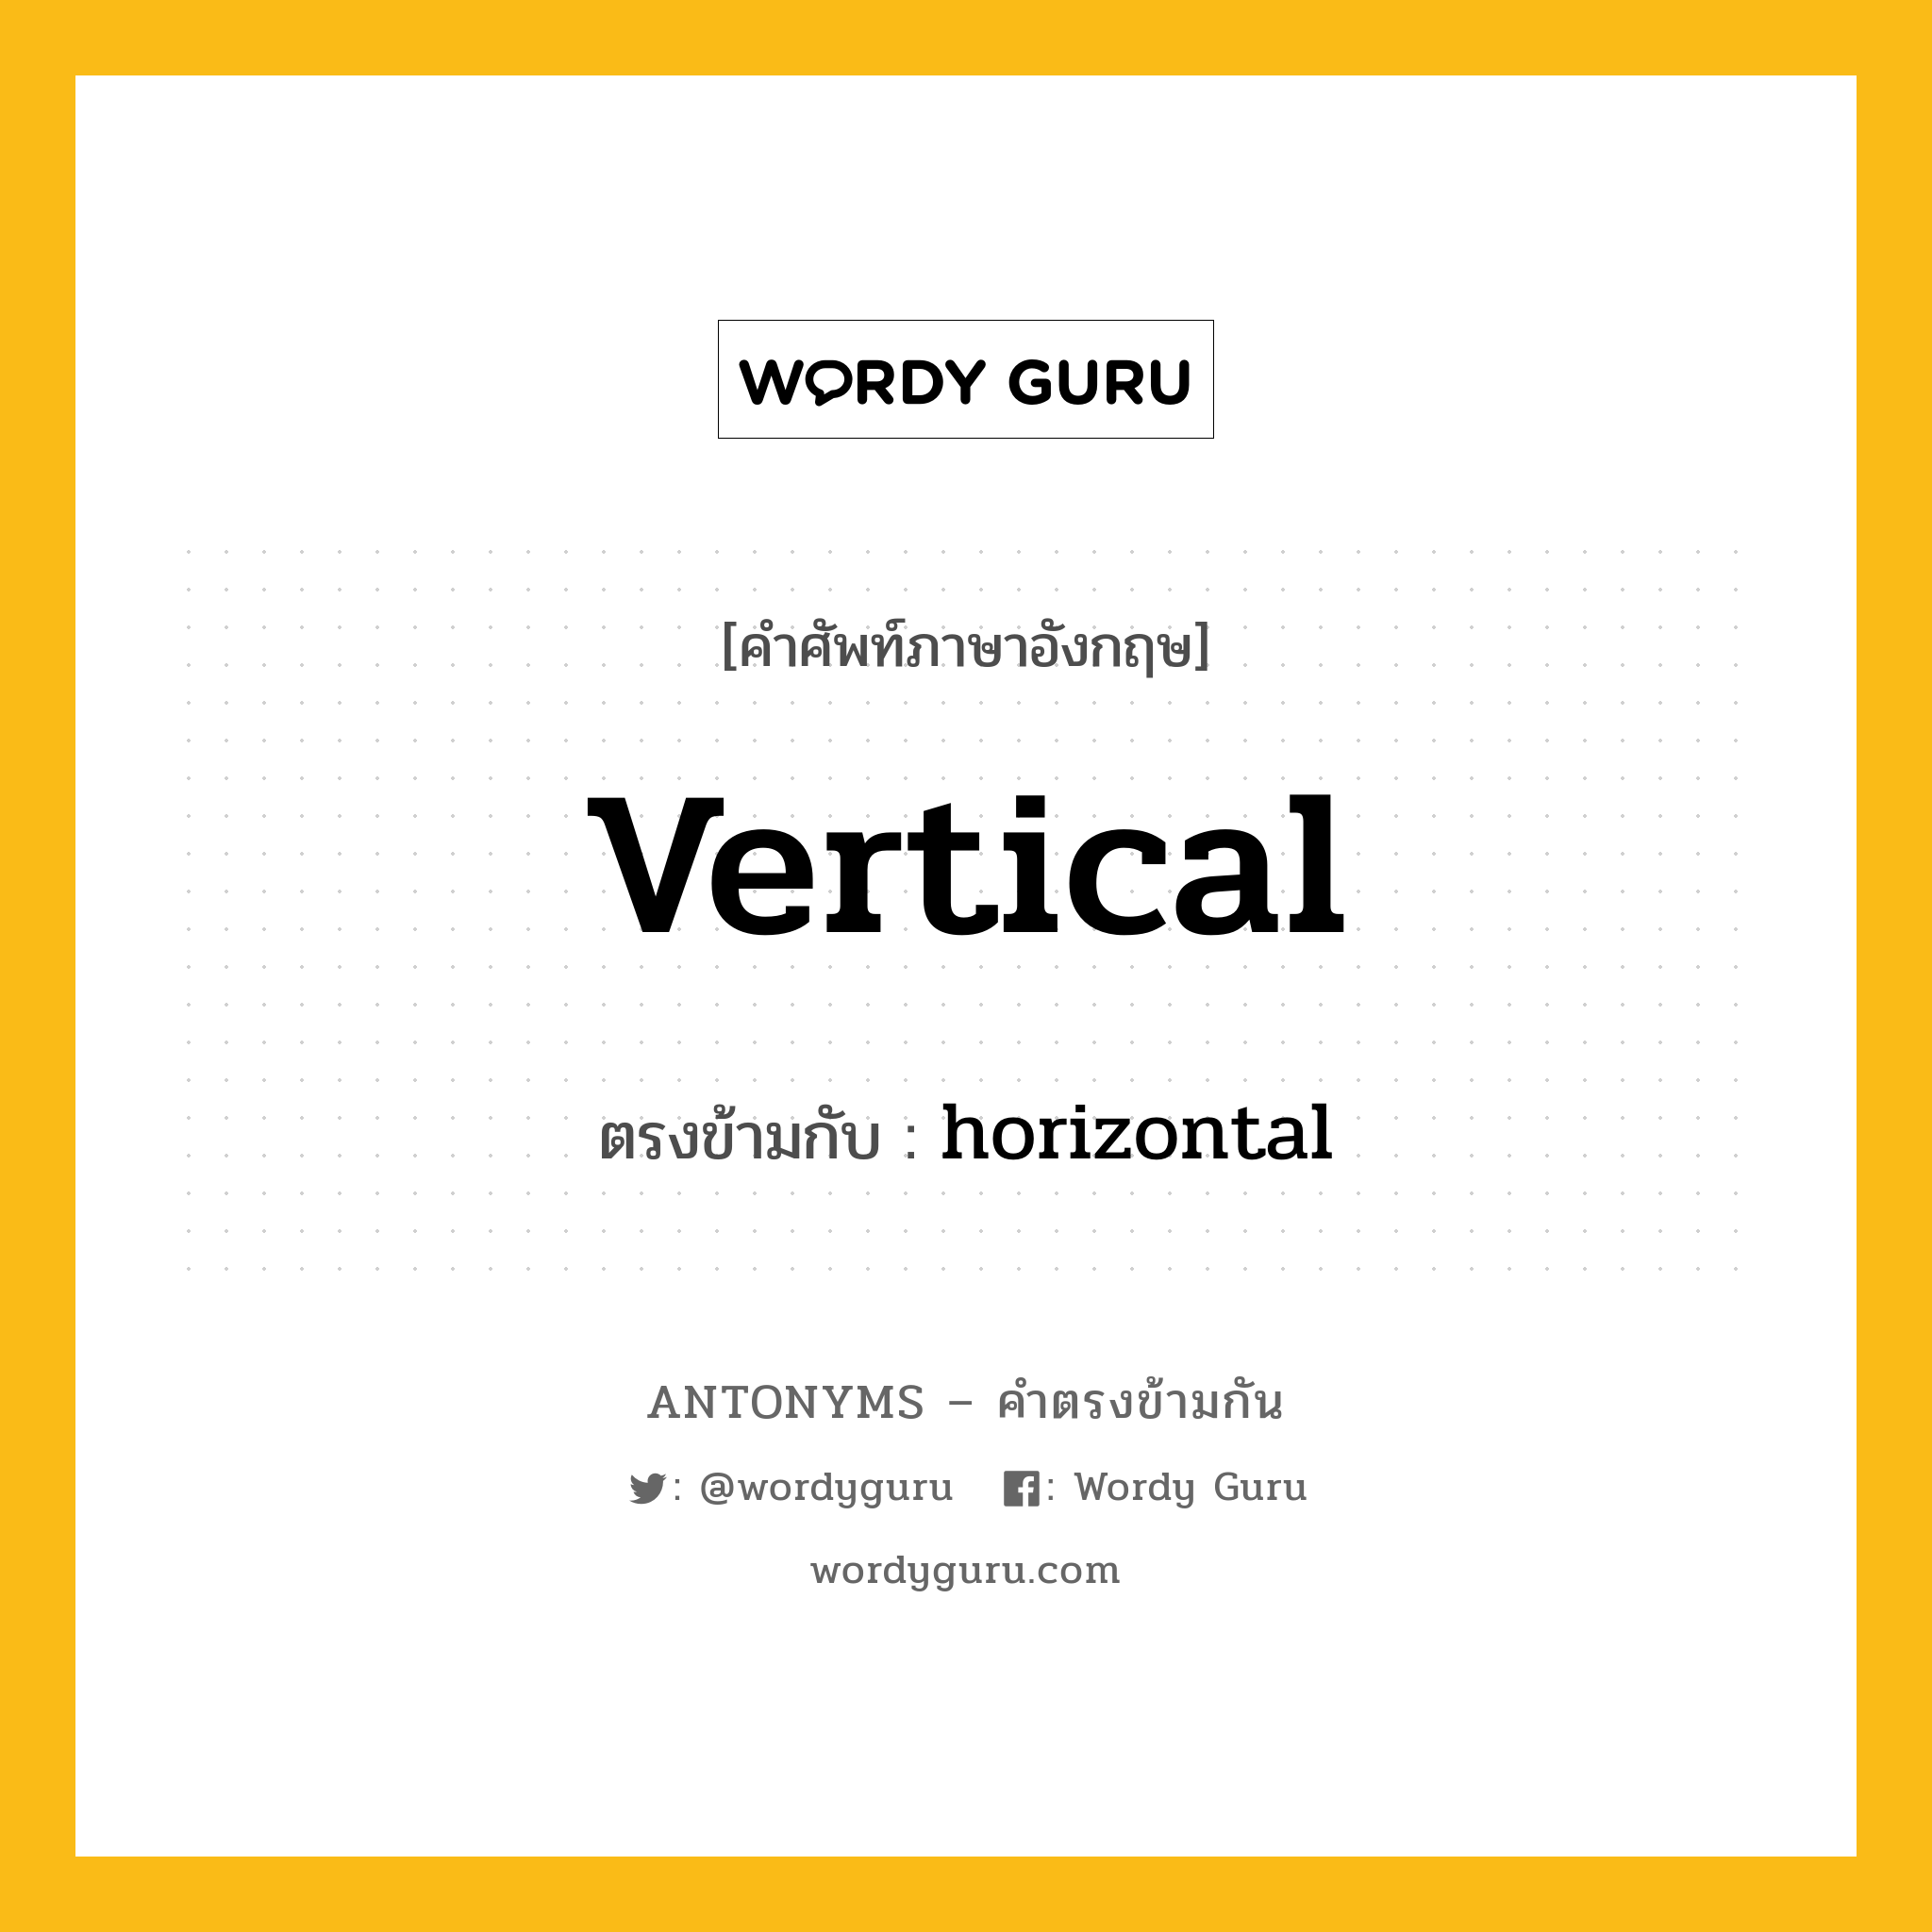 vertical เป็นคำตรงข้ามกับคำไหนบ้าง?, คำศัพท์ภาษาอังกฤษ vertical ตรงข้ามกับ horizontal หมวด horizontal